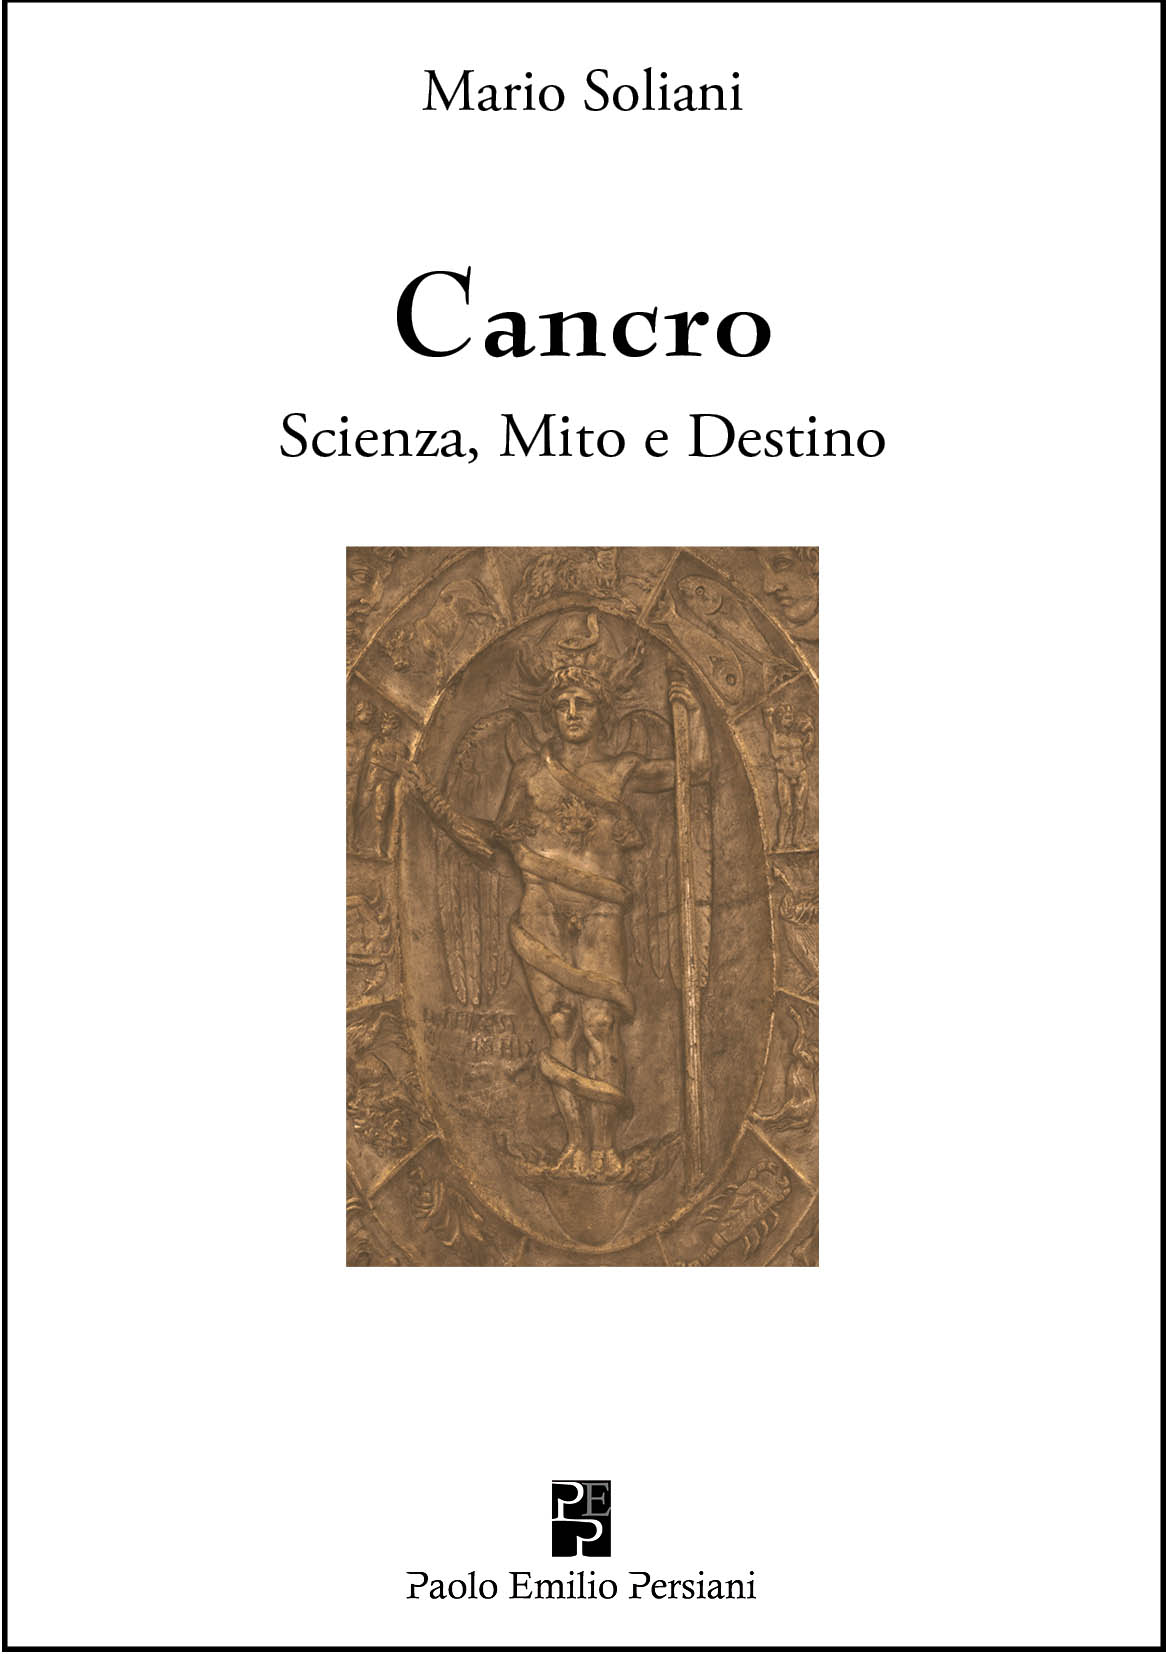 Presentazione del libro “Cancro. Scienza, Mito e Destino”